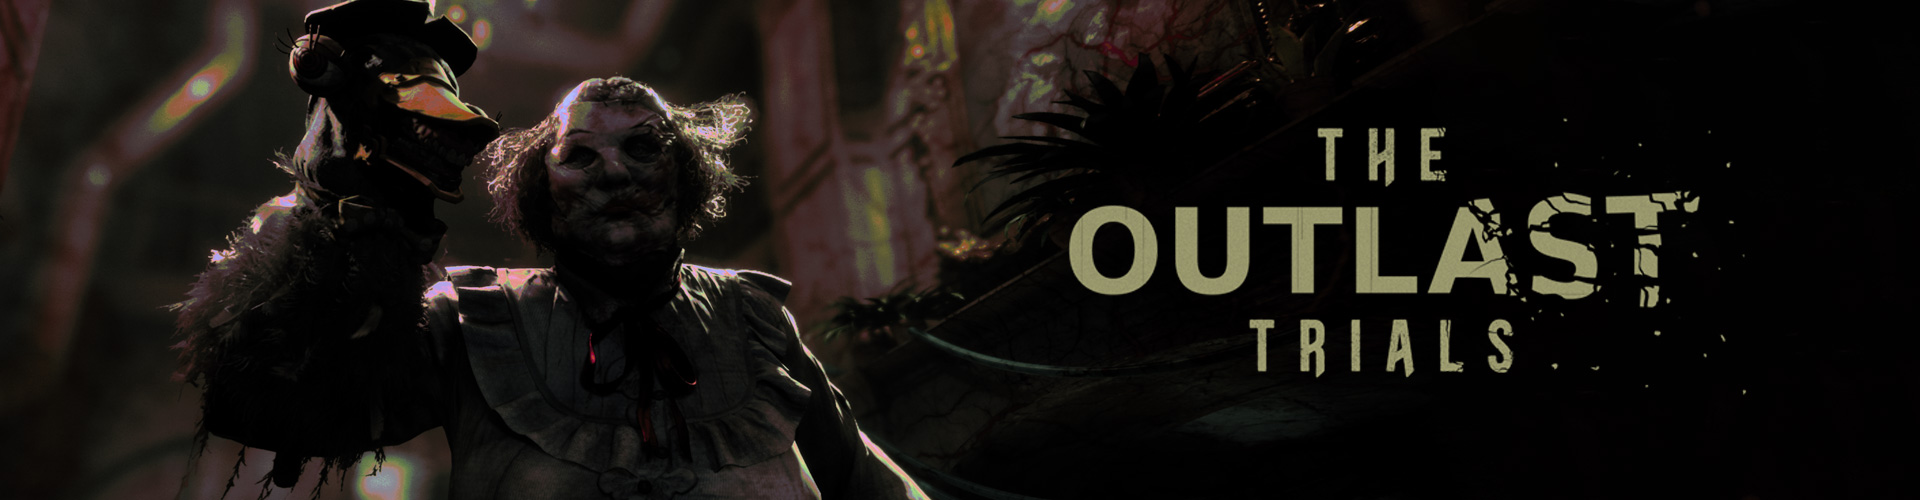 The Outlast Trials: un gioco horror psicologico cooperativo